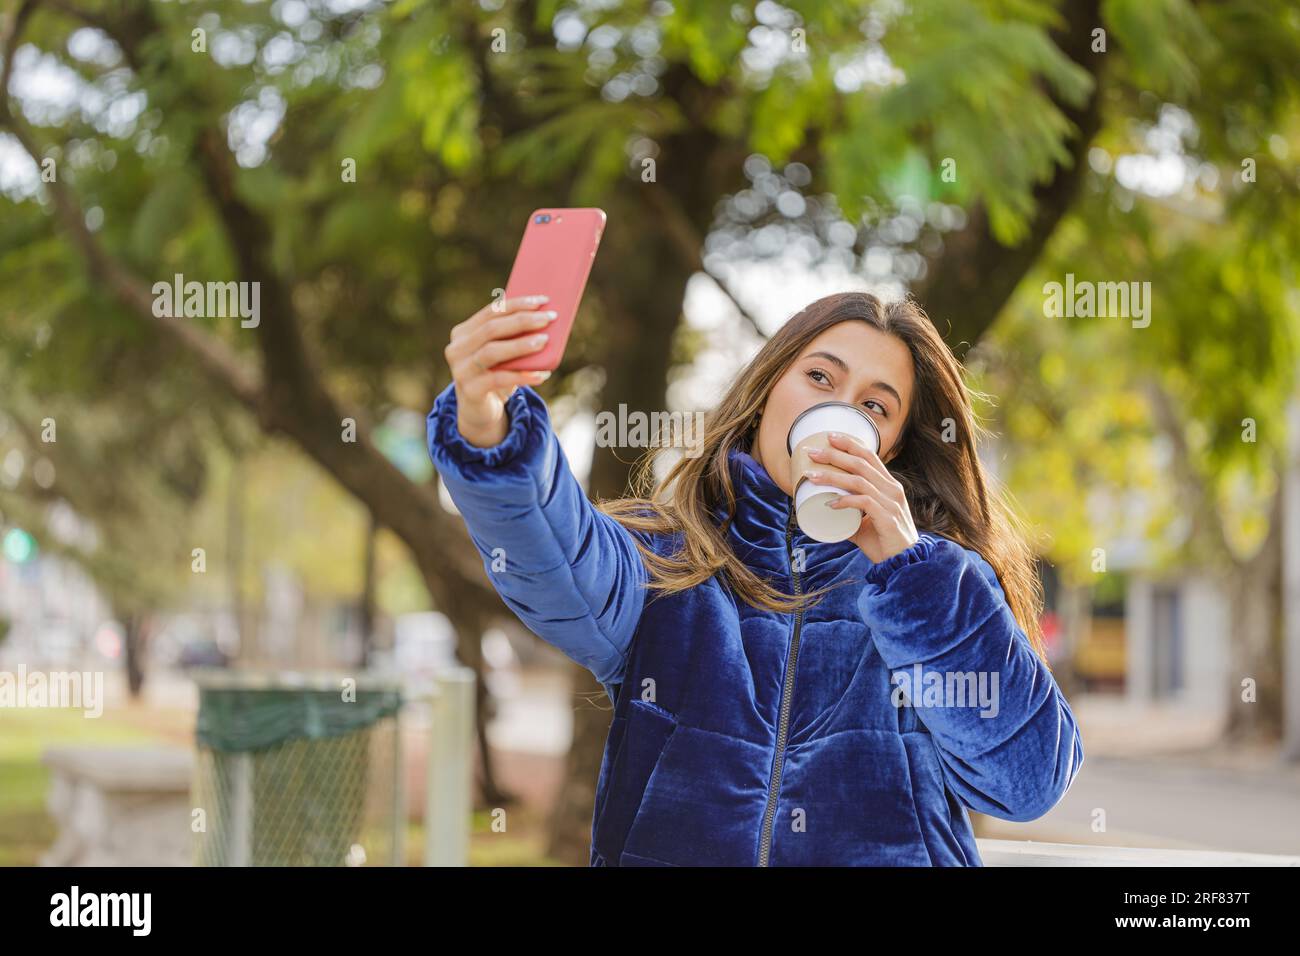 Ragazza latina con una tazza di caffè usa e getta che scatta un selfie con il cellulare in un parco pubblico. Foto Stock